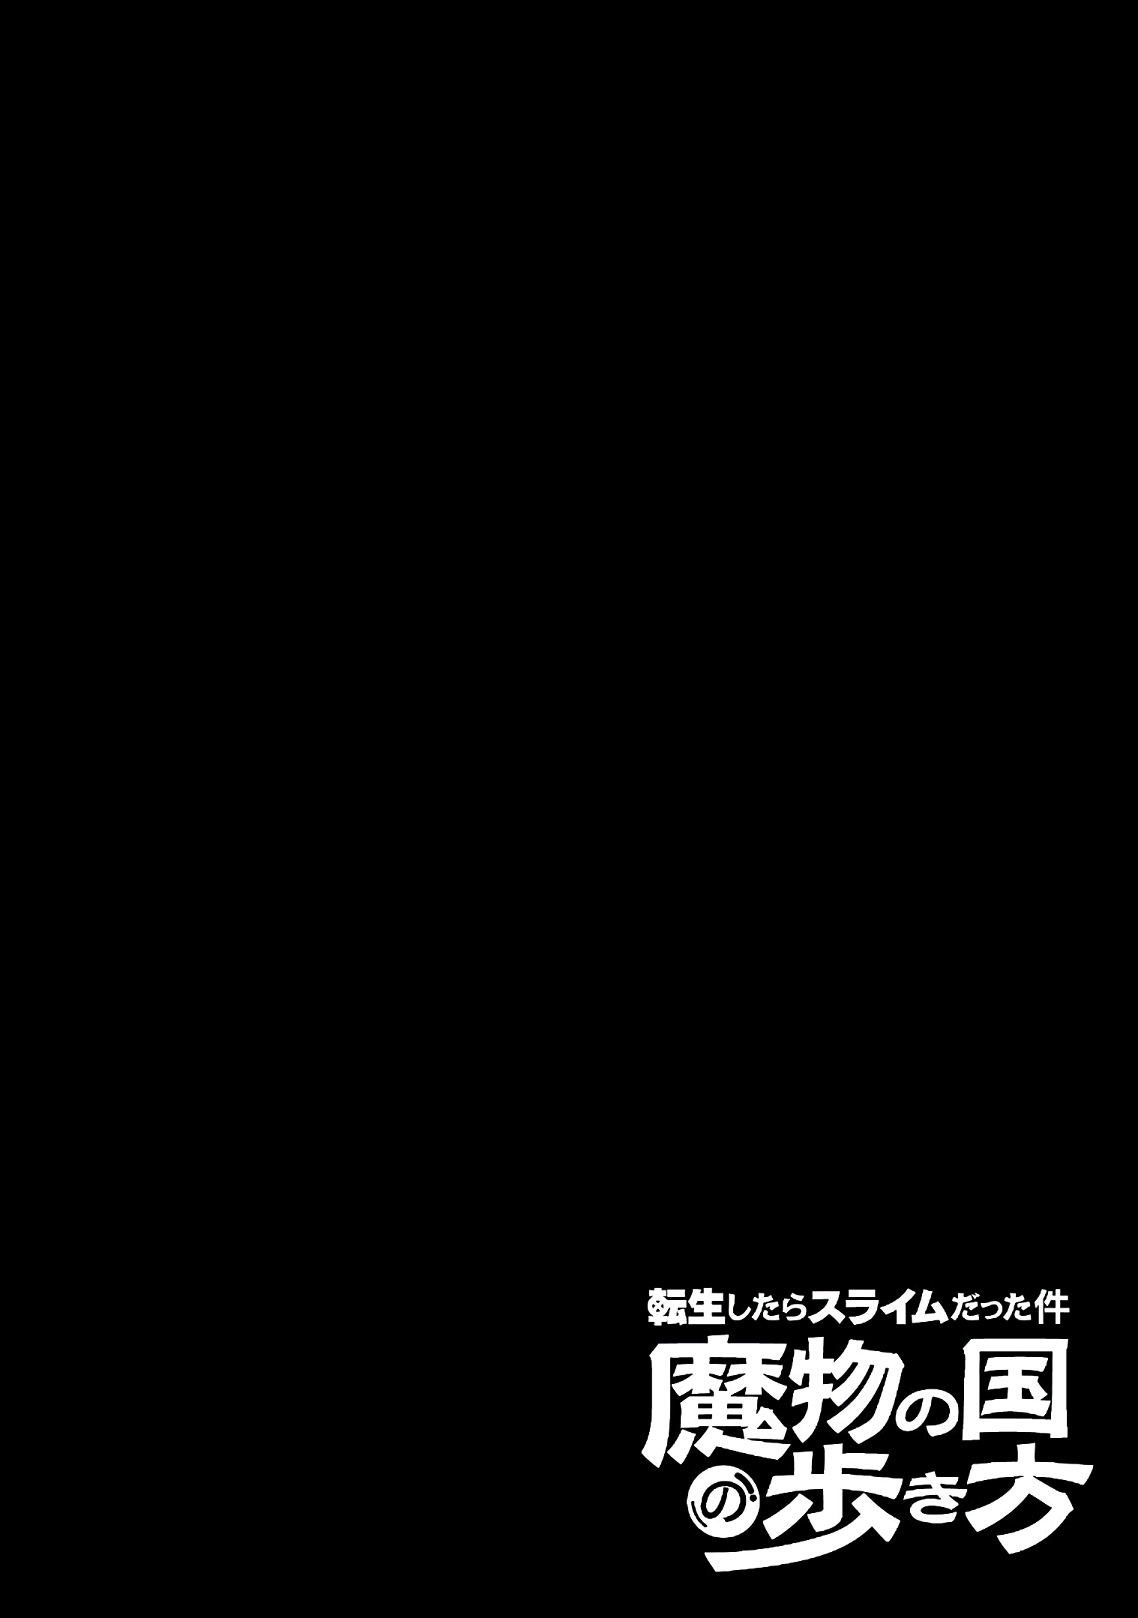 Tensei Shitara Slime Datta Ken: Mamono no Kuni no Arukikata Vol. 4 Ch. 22 A Great Day for a Cherry Blossom Viewing ☆ 3 Stars!!